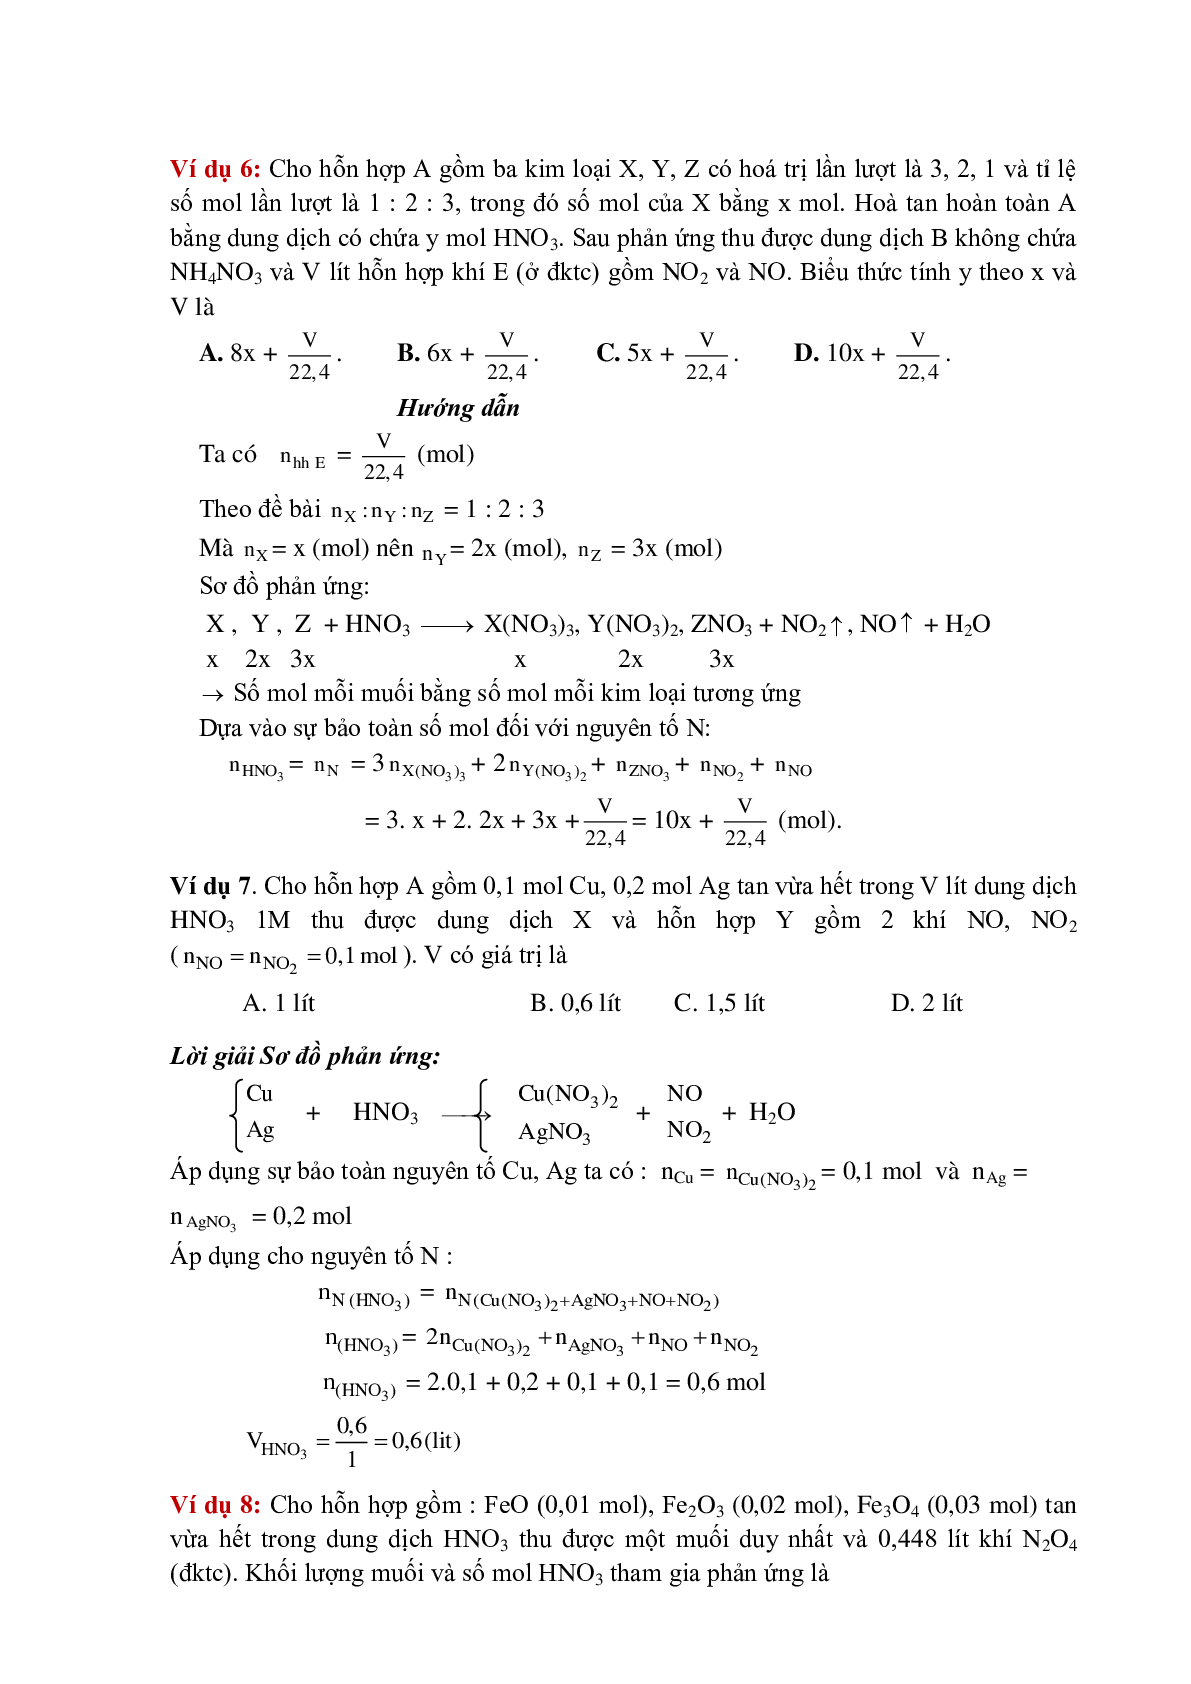 Lý thuyết, bài tập về Phương pháp bảo toàn khối lượng có đáp án (trang 7)